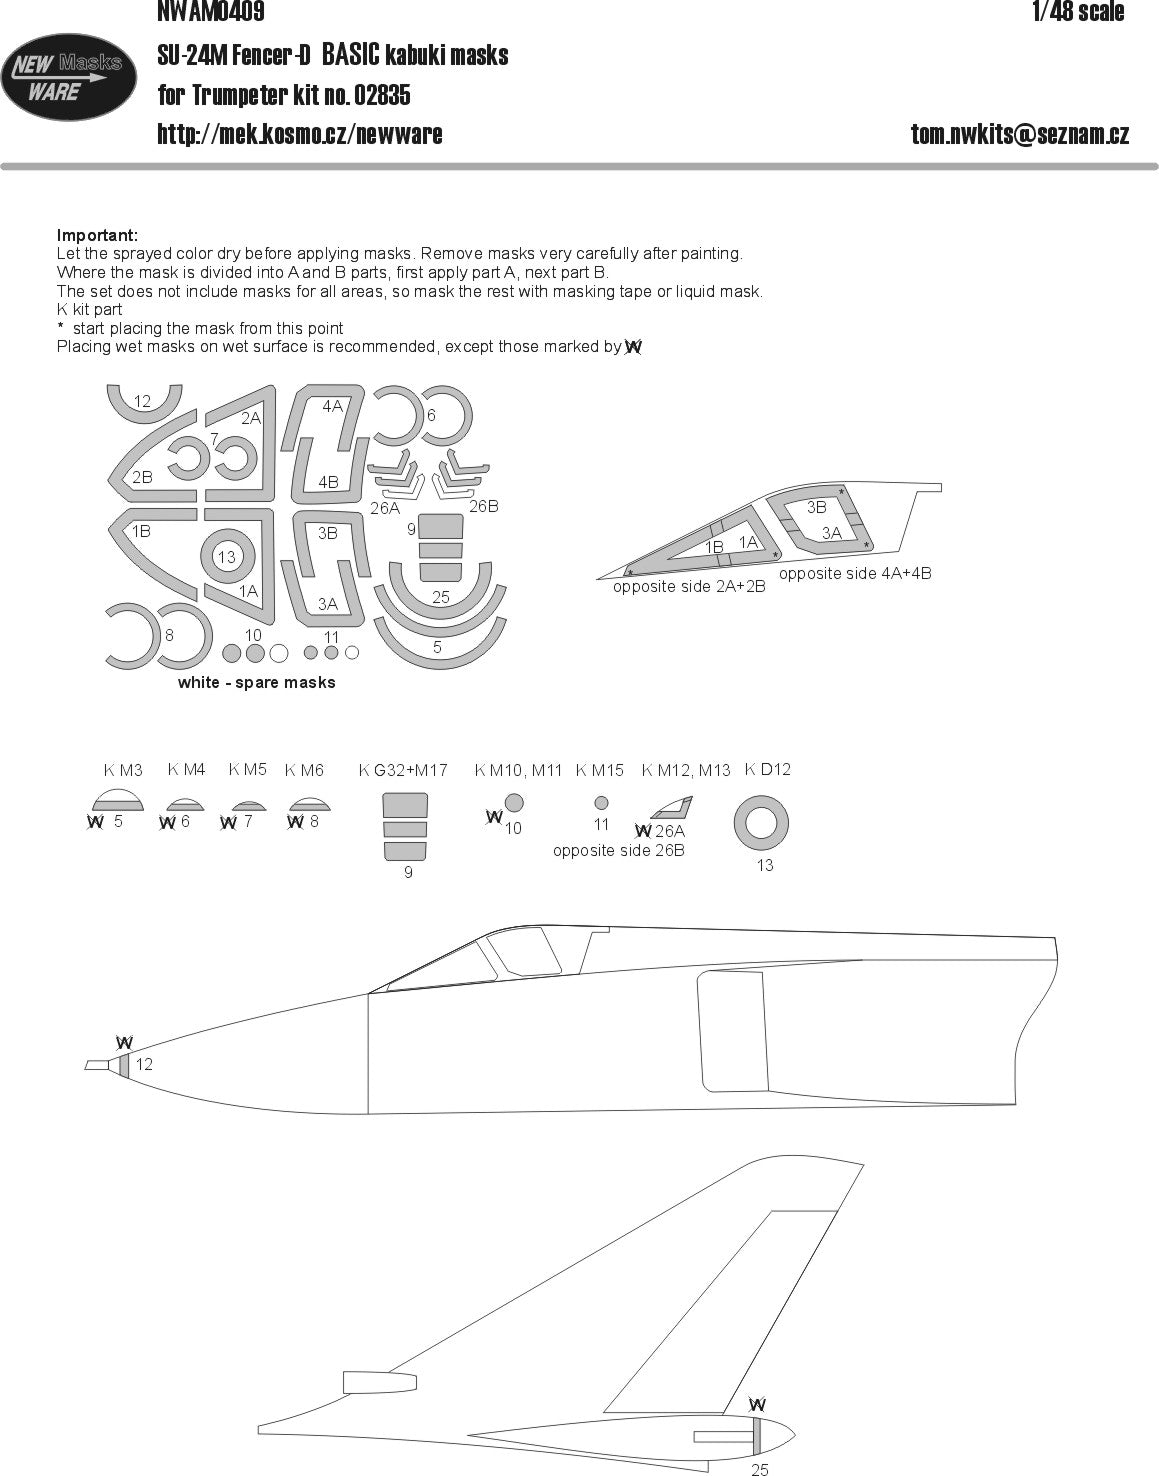 New Ware 0409 - Masking set for Trumpeter 1/48 Su-24M Fencer-D BASIC